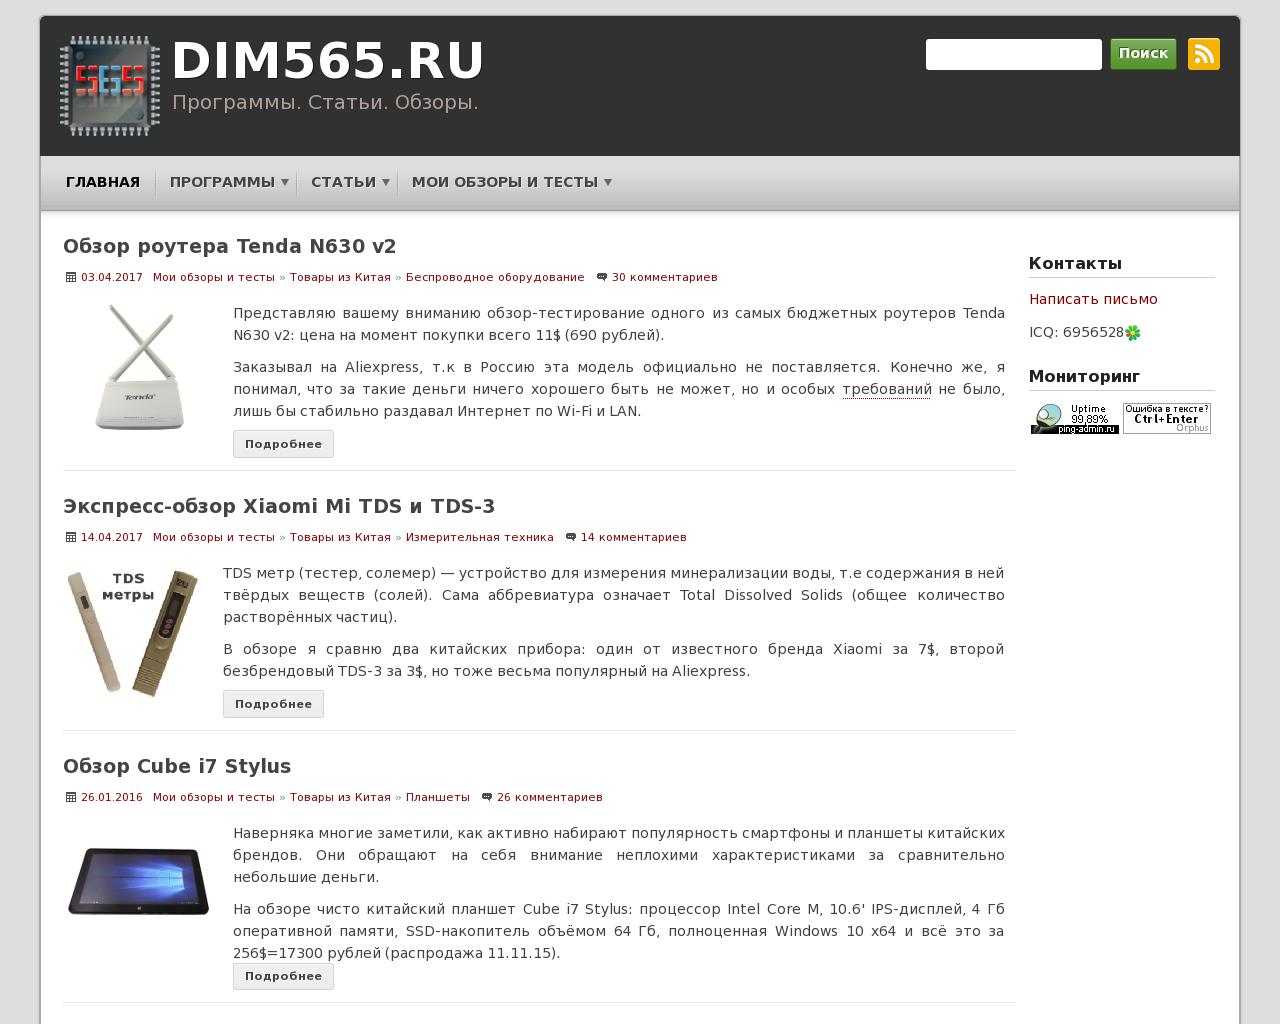 Изображение сайта dim565.ru в разрешении 1280x1024